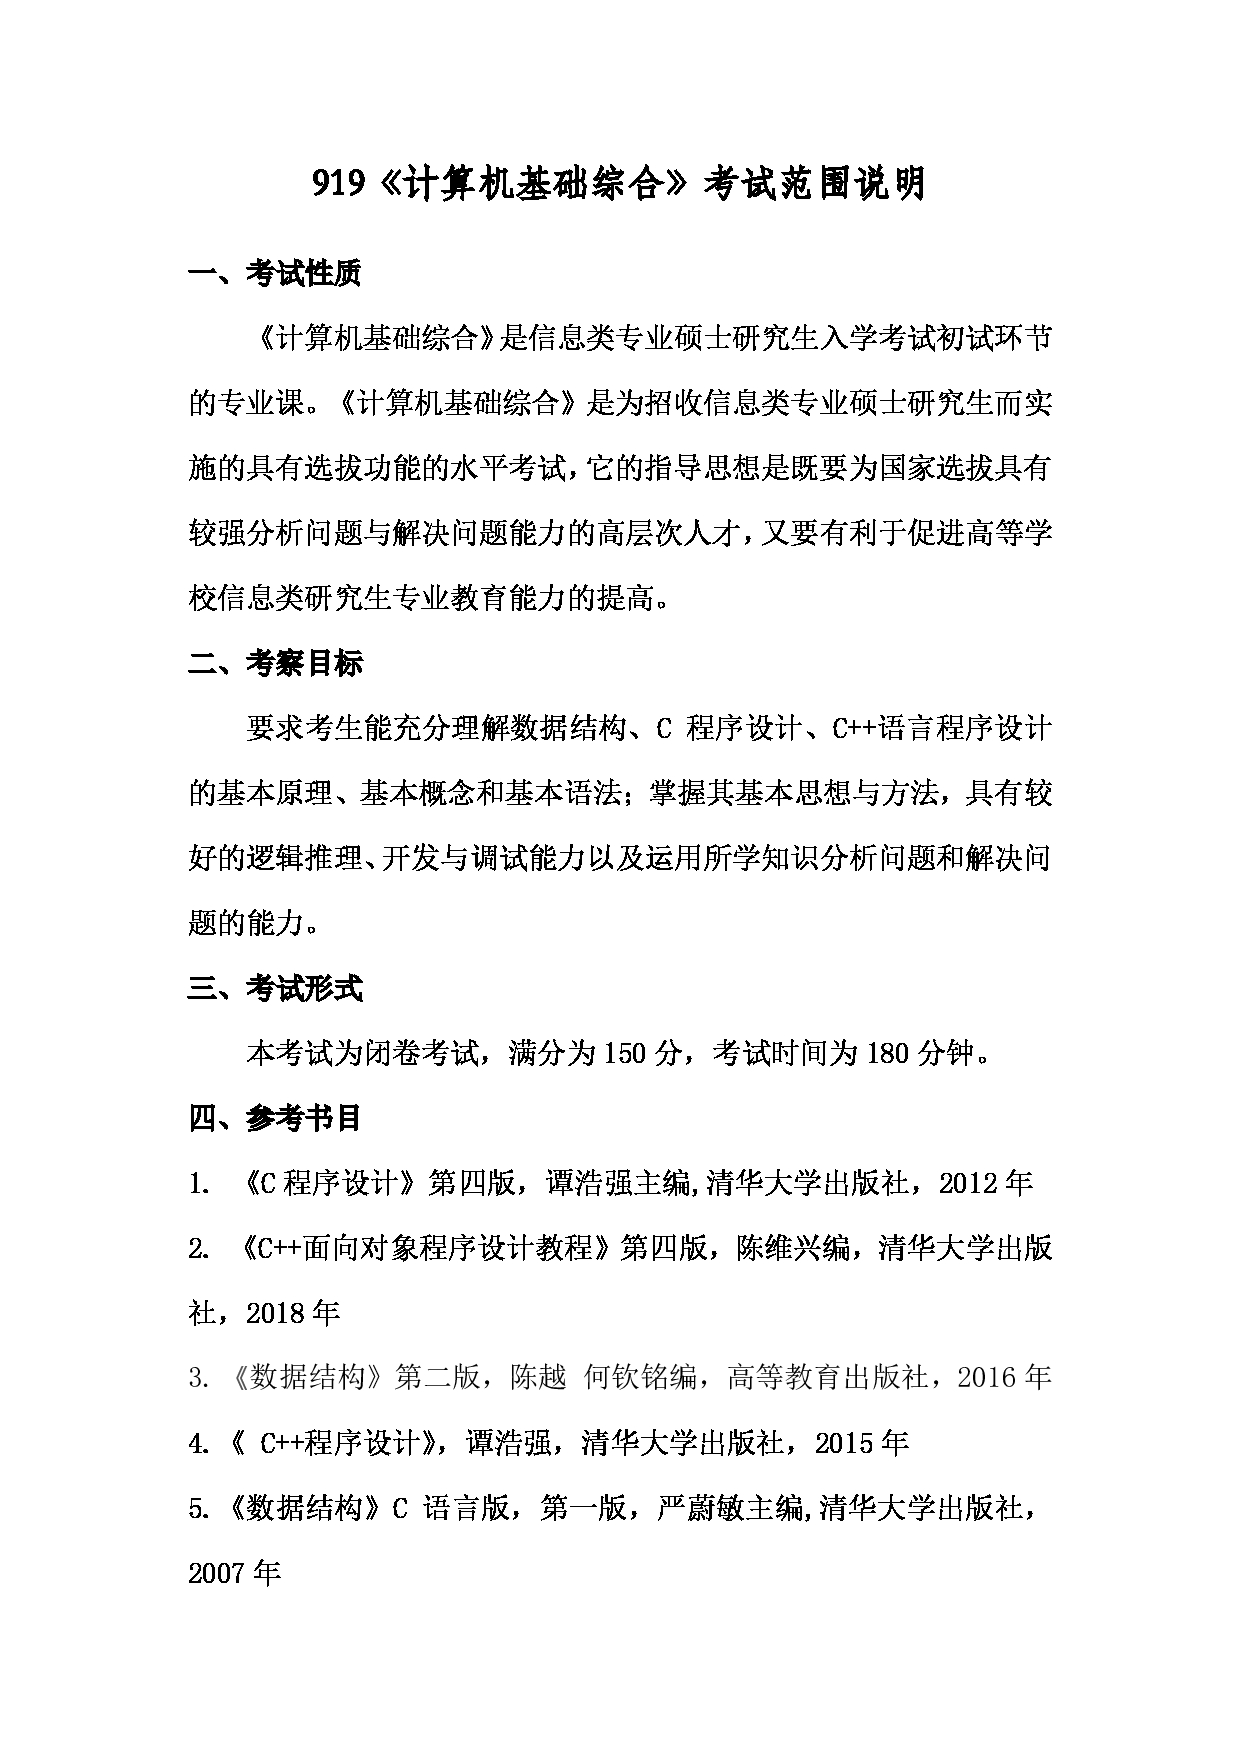 2022考研大纲：上海海洋大学2022年考研自命题科目 919计算机基础综合 考试大纲第1页